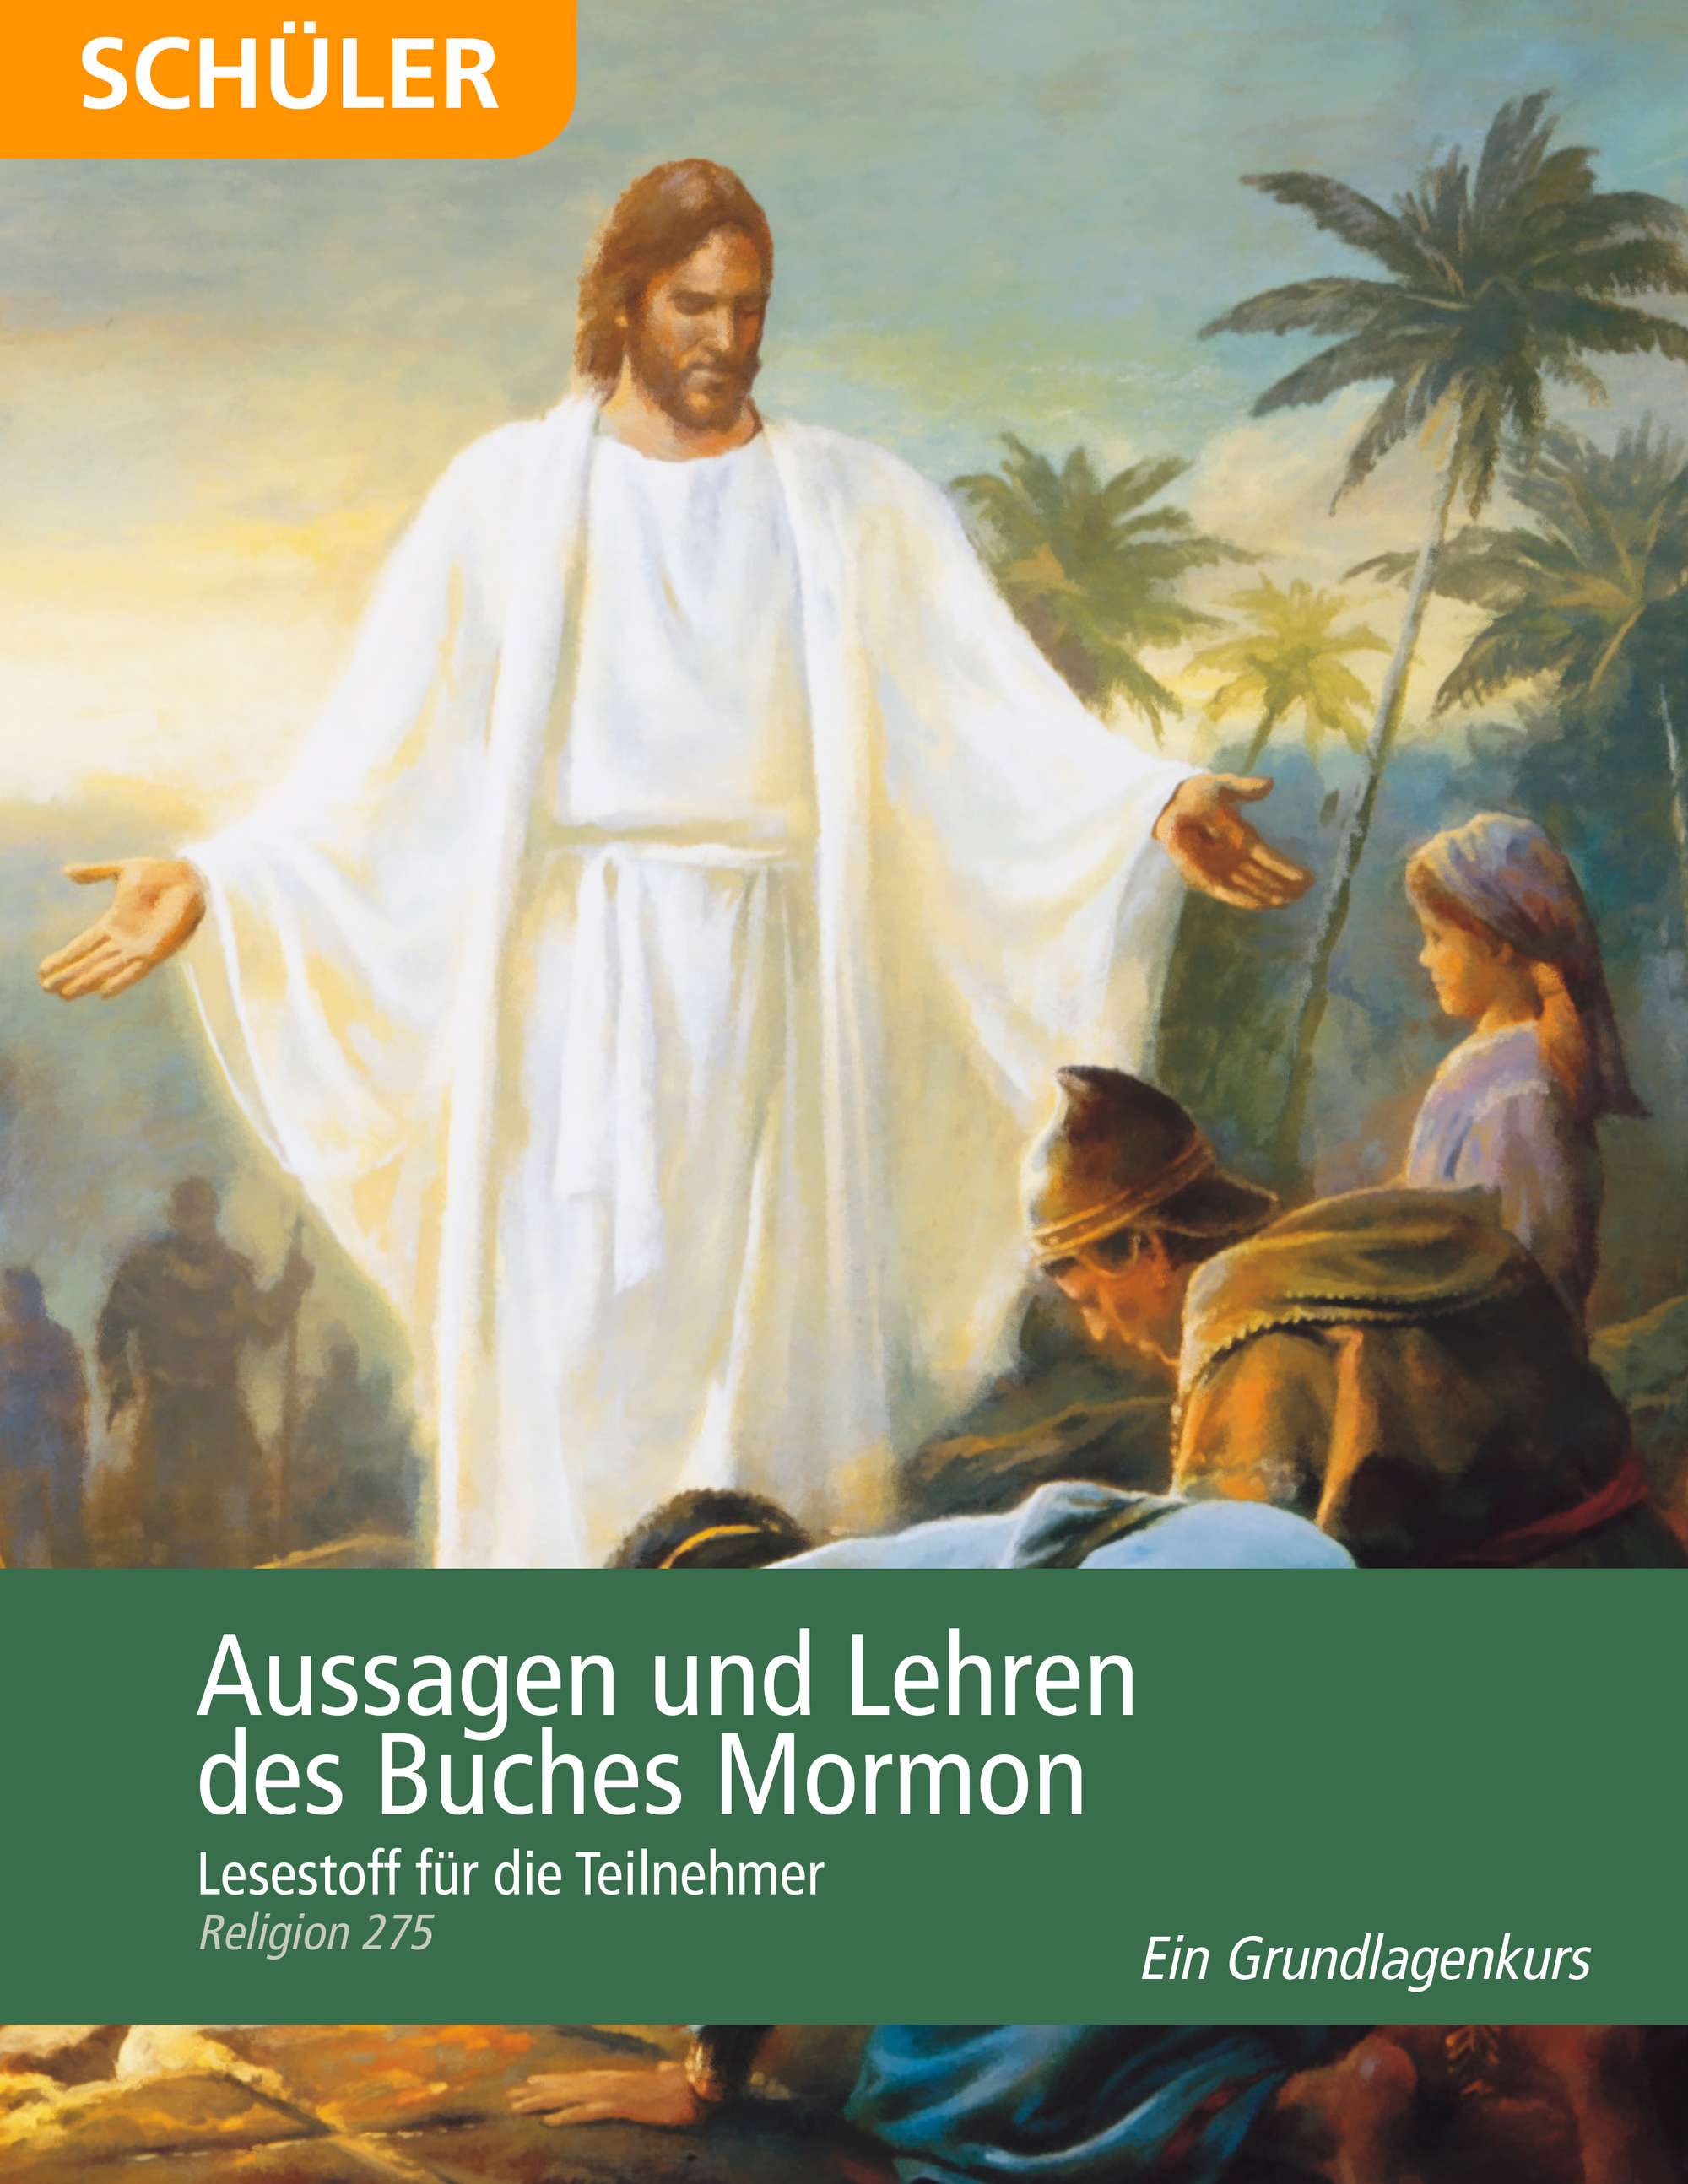 Aussagen und Lehren des Buches Mormon – Lesestoff für die Teilnehmer (Religion 275)